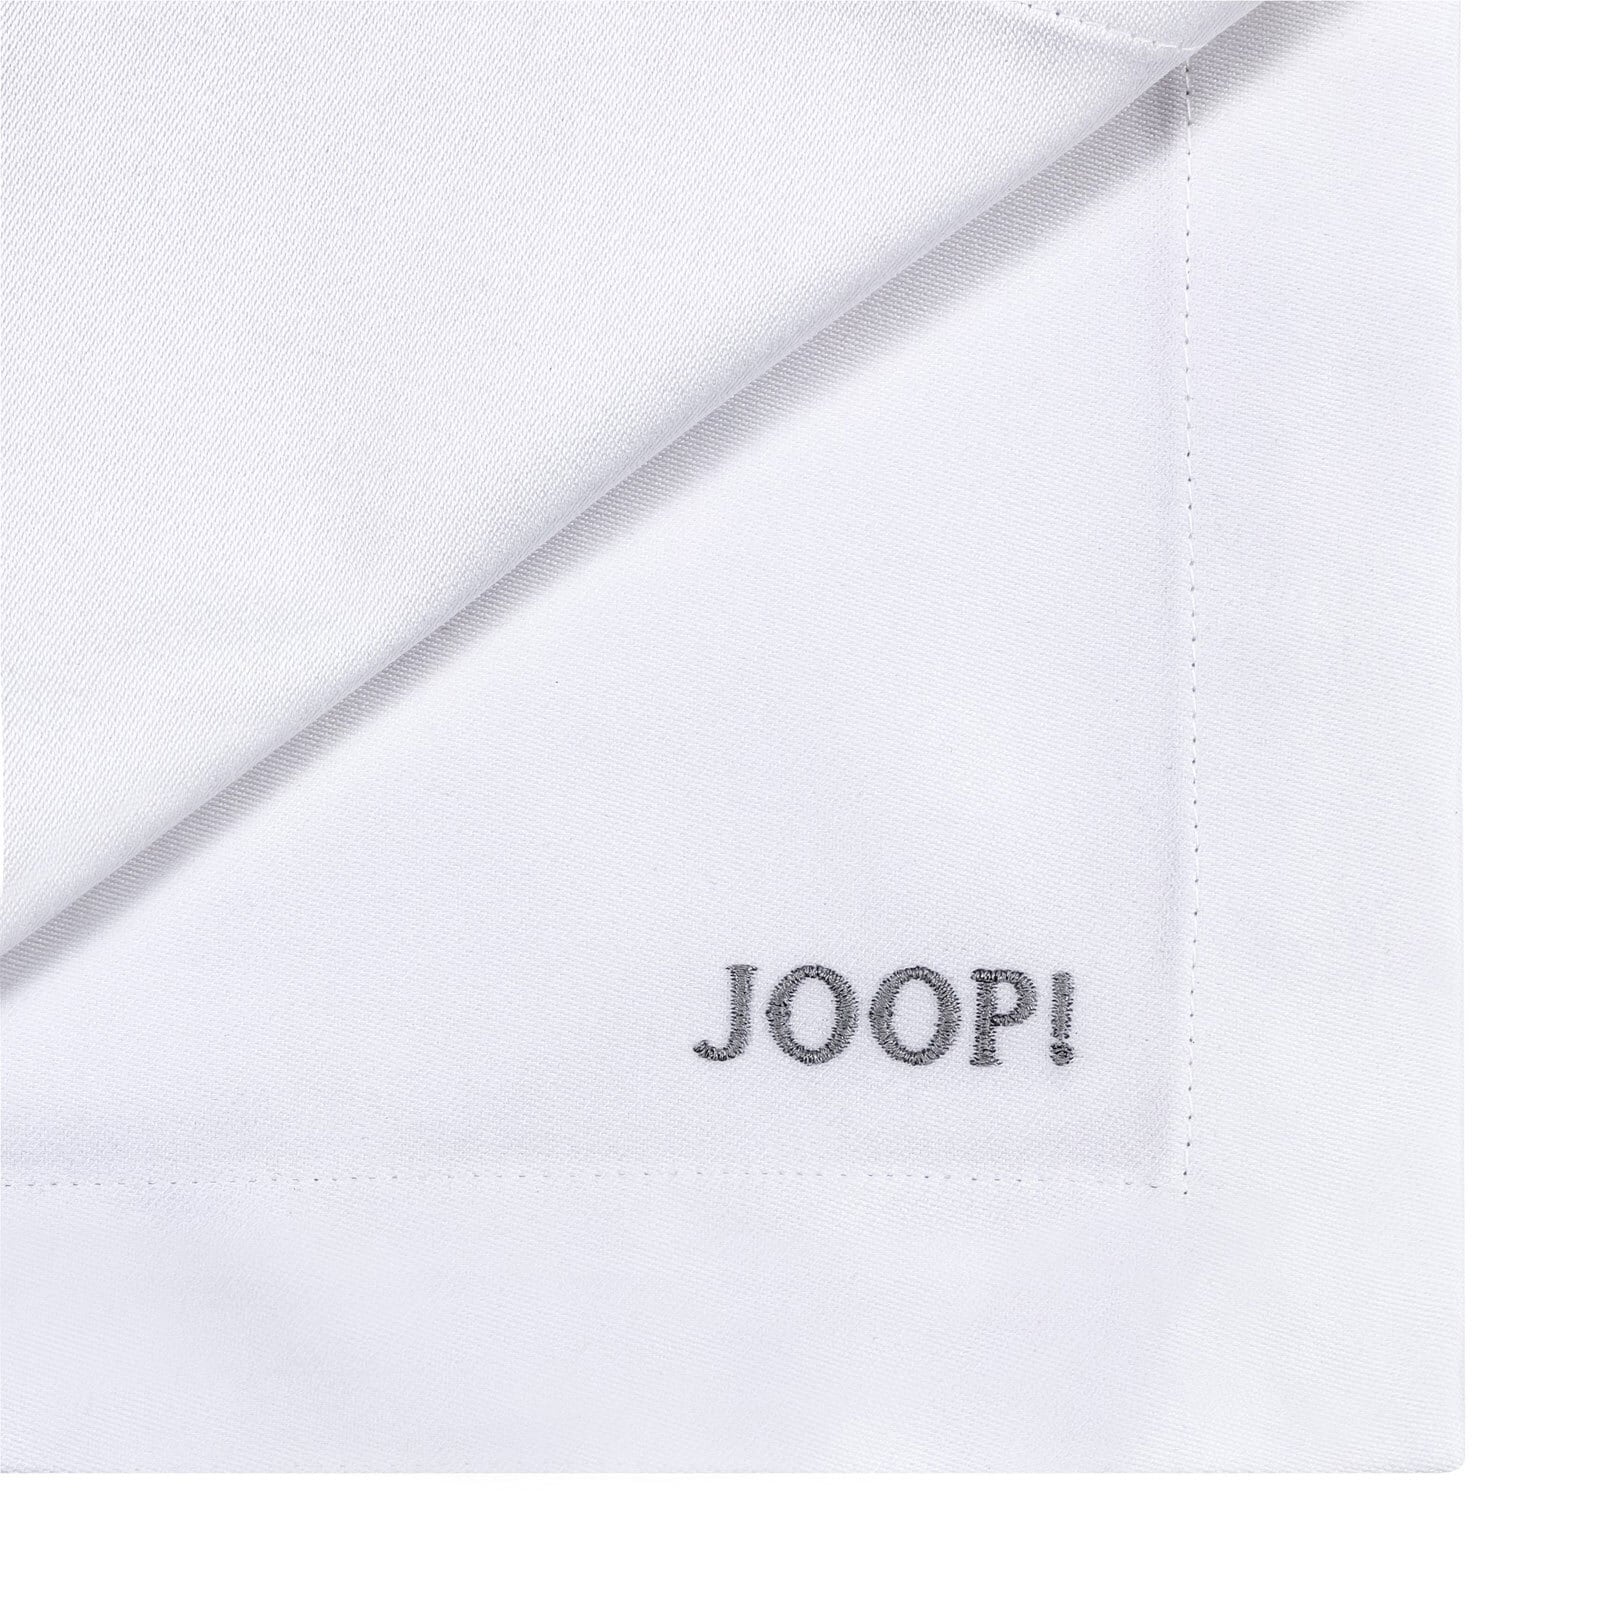 JOOP! Tischläufer STITCH gesticktes Logo silber